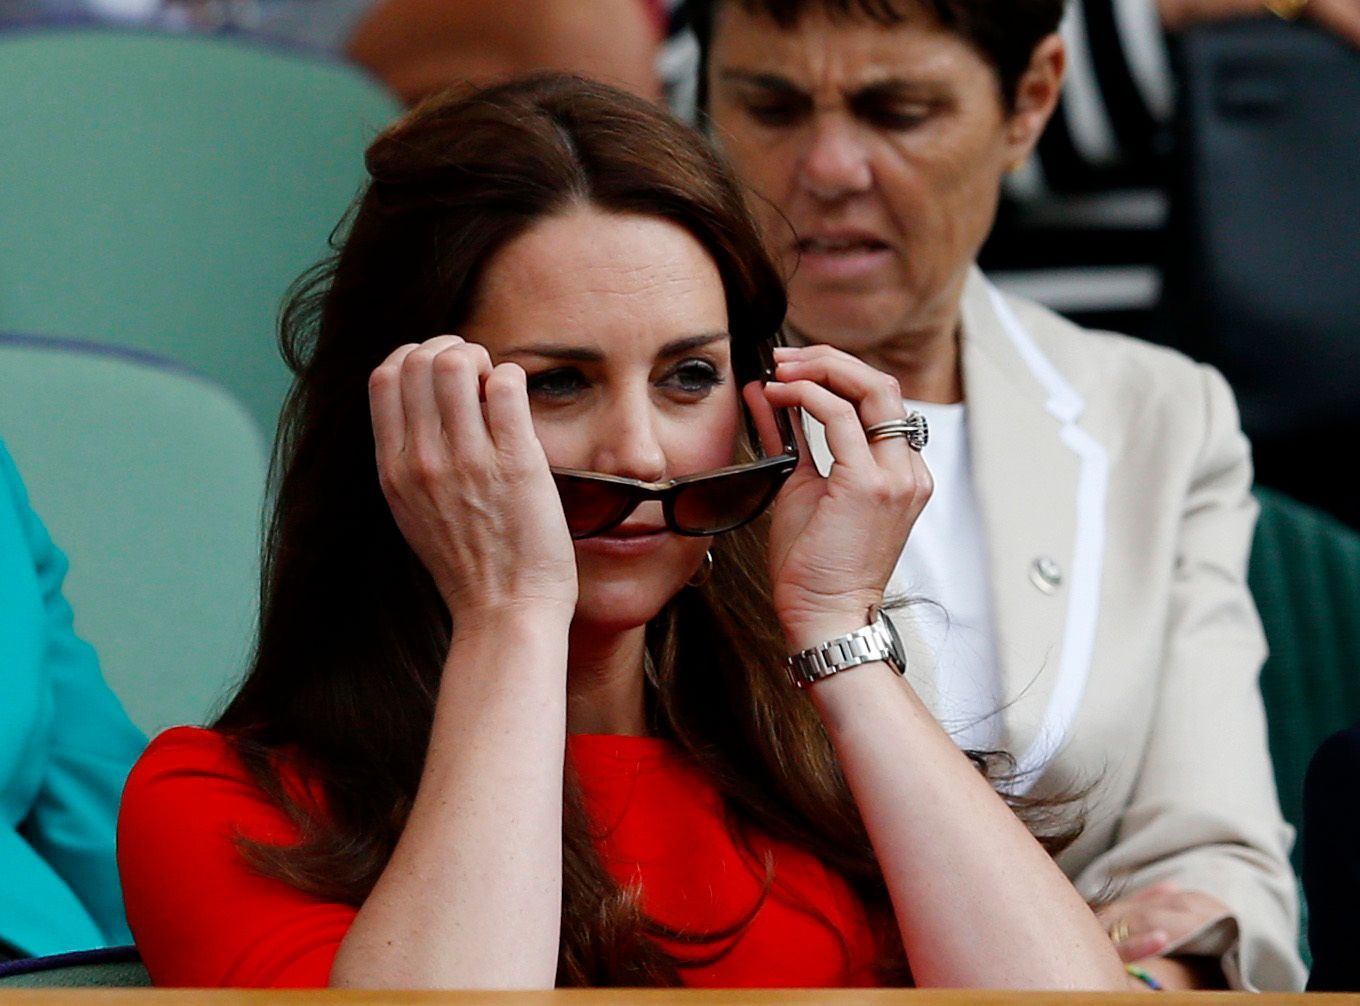 Wimbledon 2015: Catherine, vévodkyně z Cambridge (Kate Middletonová)